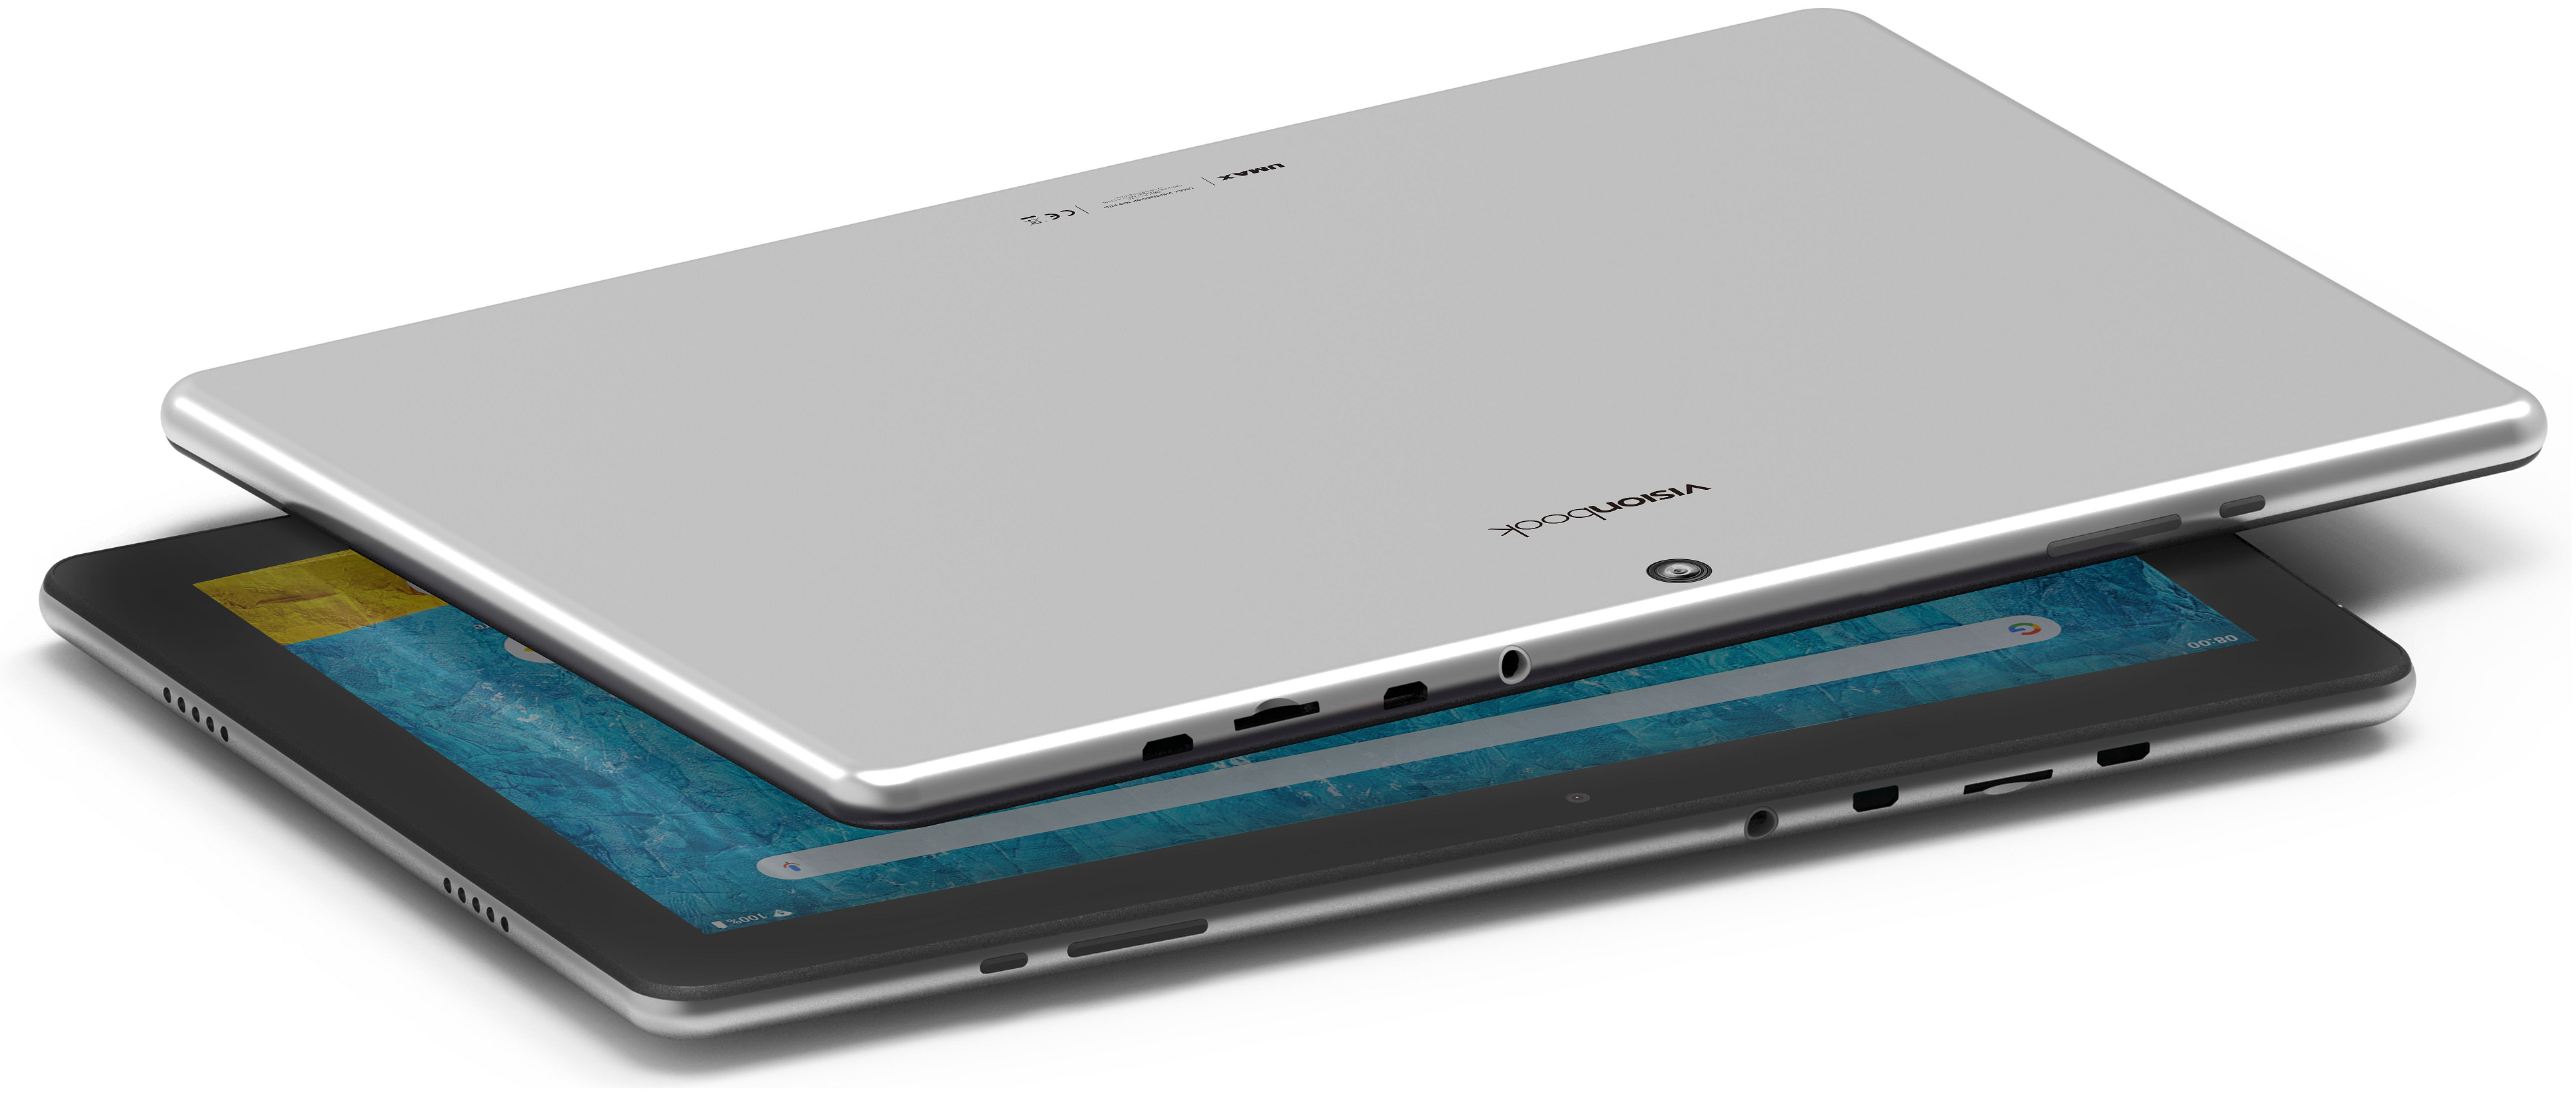 UMAX VisionBook 10Q Pro 2GB/32GB biela